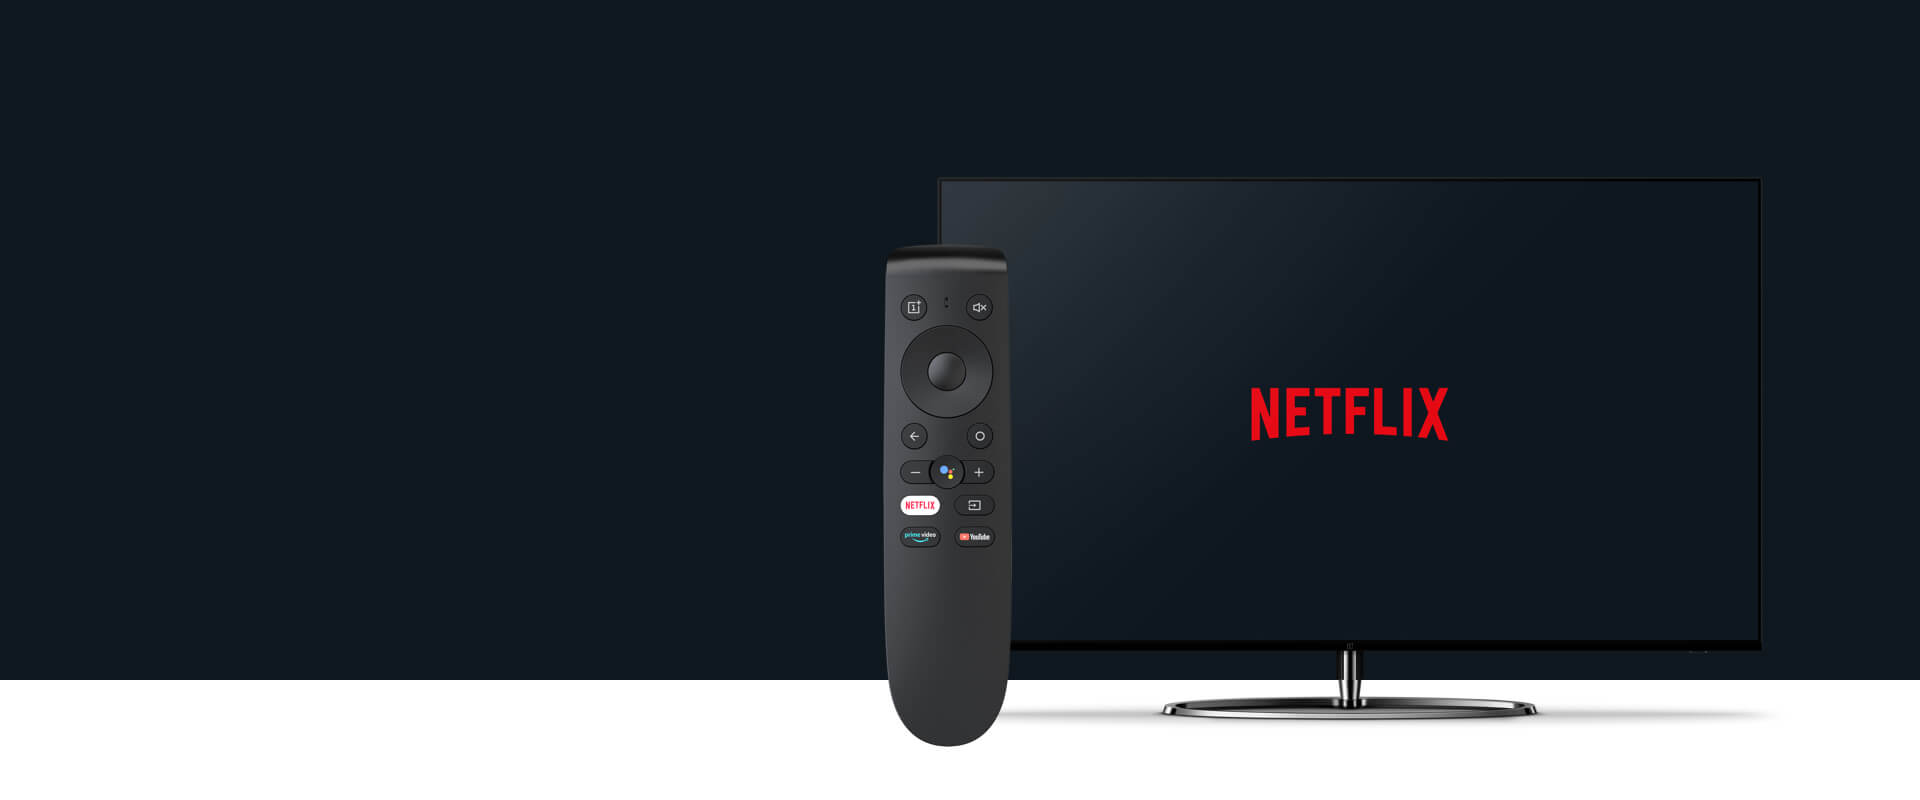 OnePlus Netflix Remote